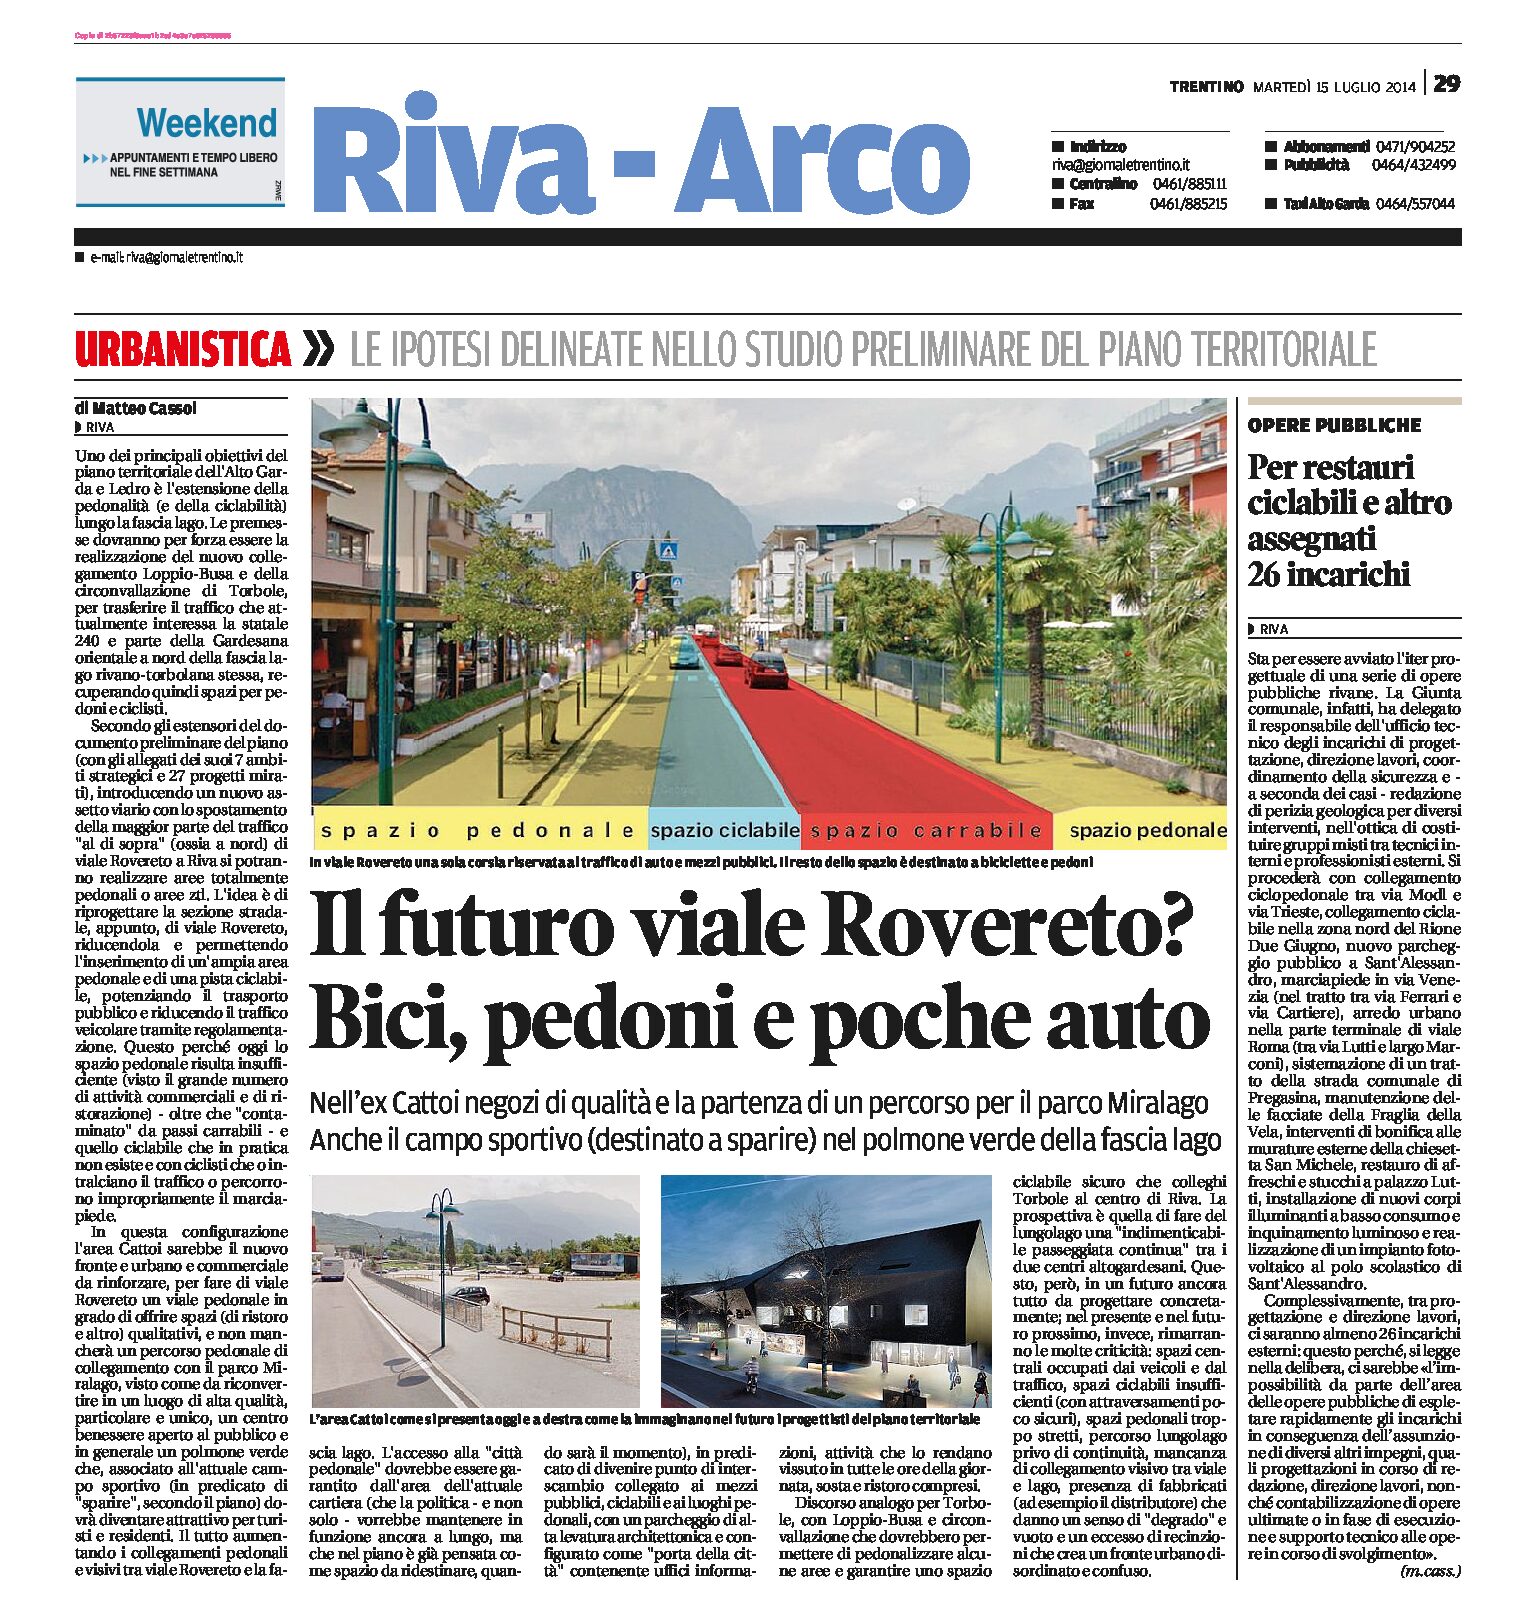 Riva – Torbole: il futuro viale Rovereto? Bici, pedoni e poche auto